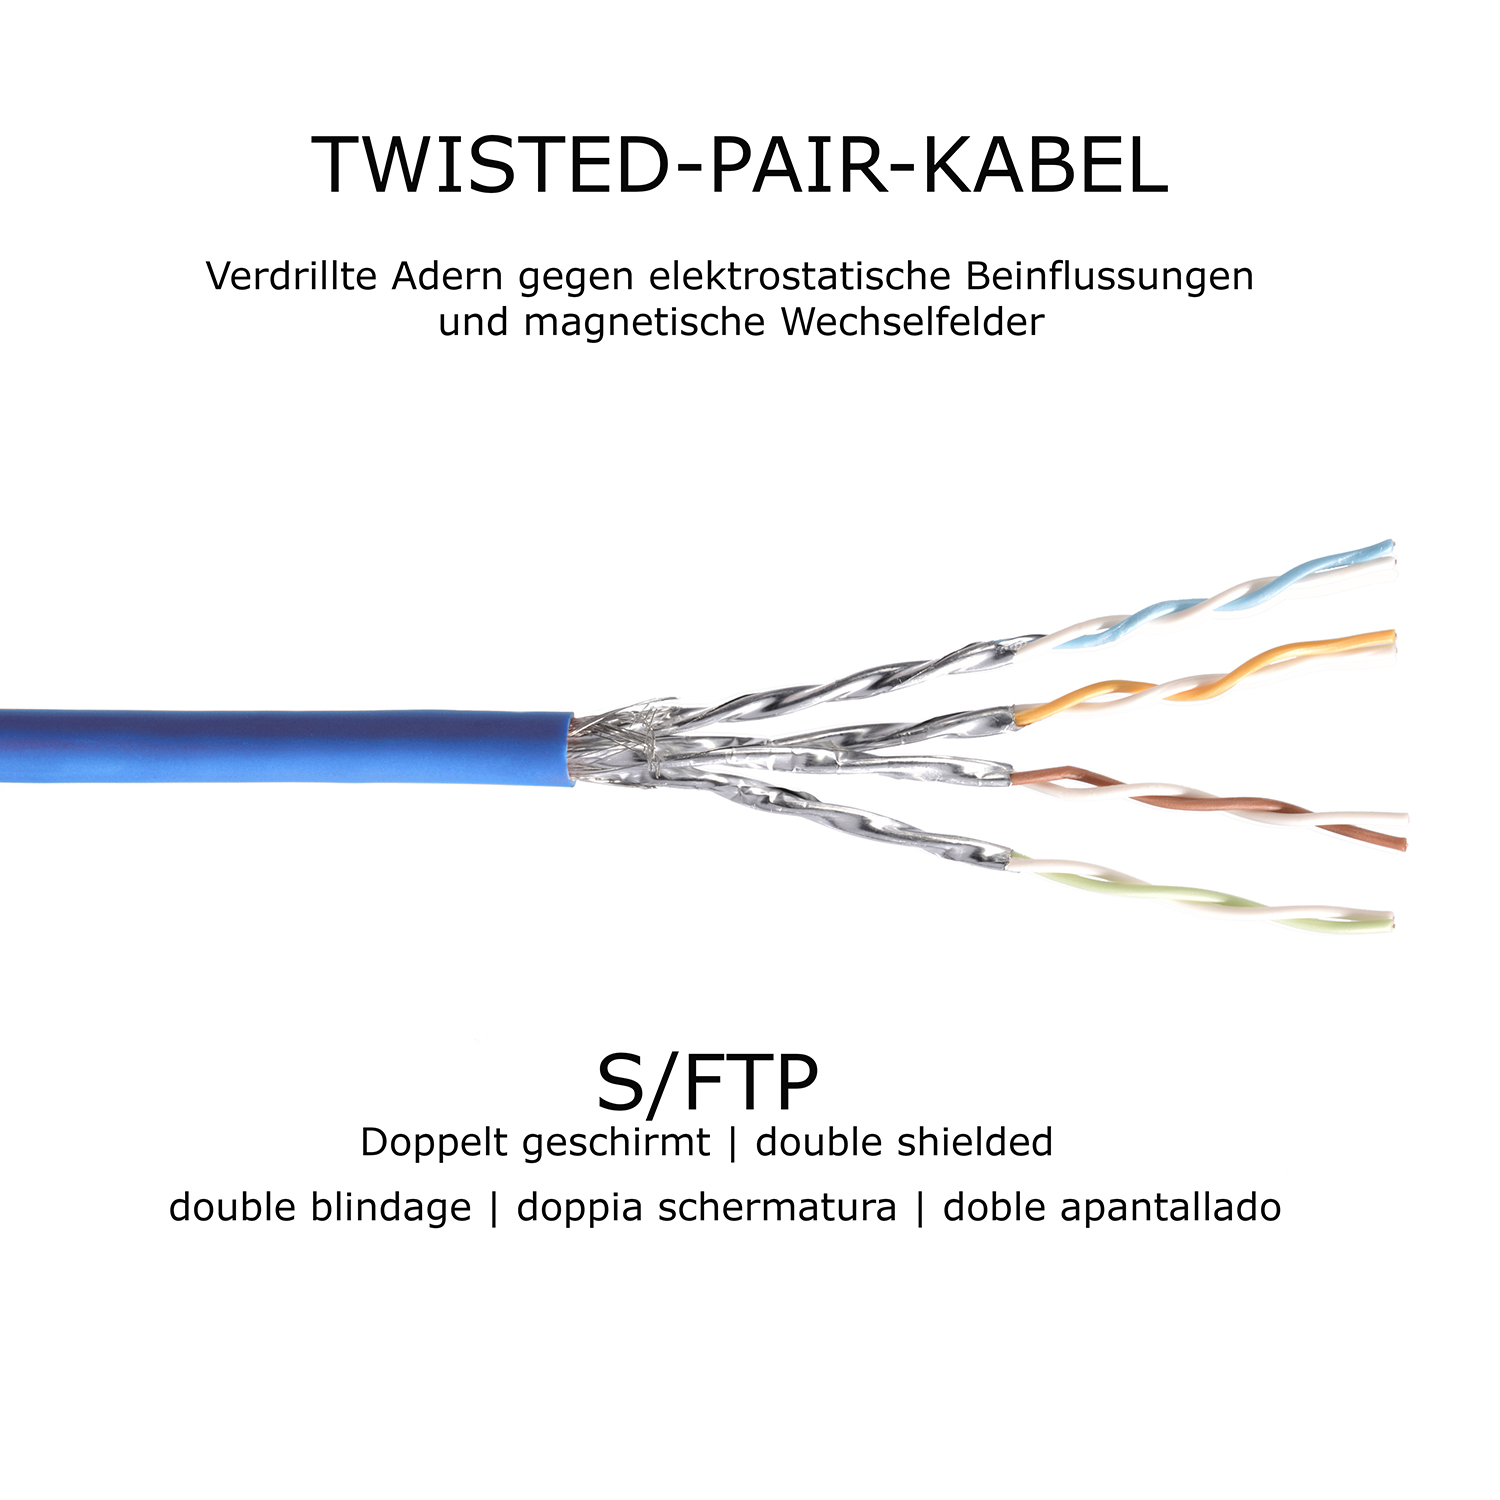 TPFNET 10er Pack 2m Patchkabel 2 1000Mbit, m blau, Netzwerkkabel, / S/FTP Netzwerkkabel